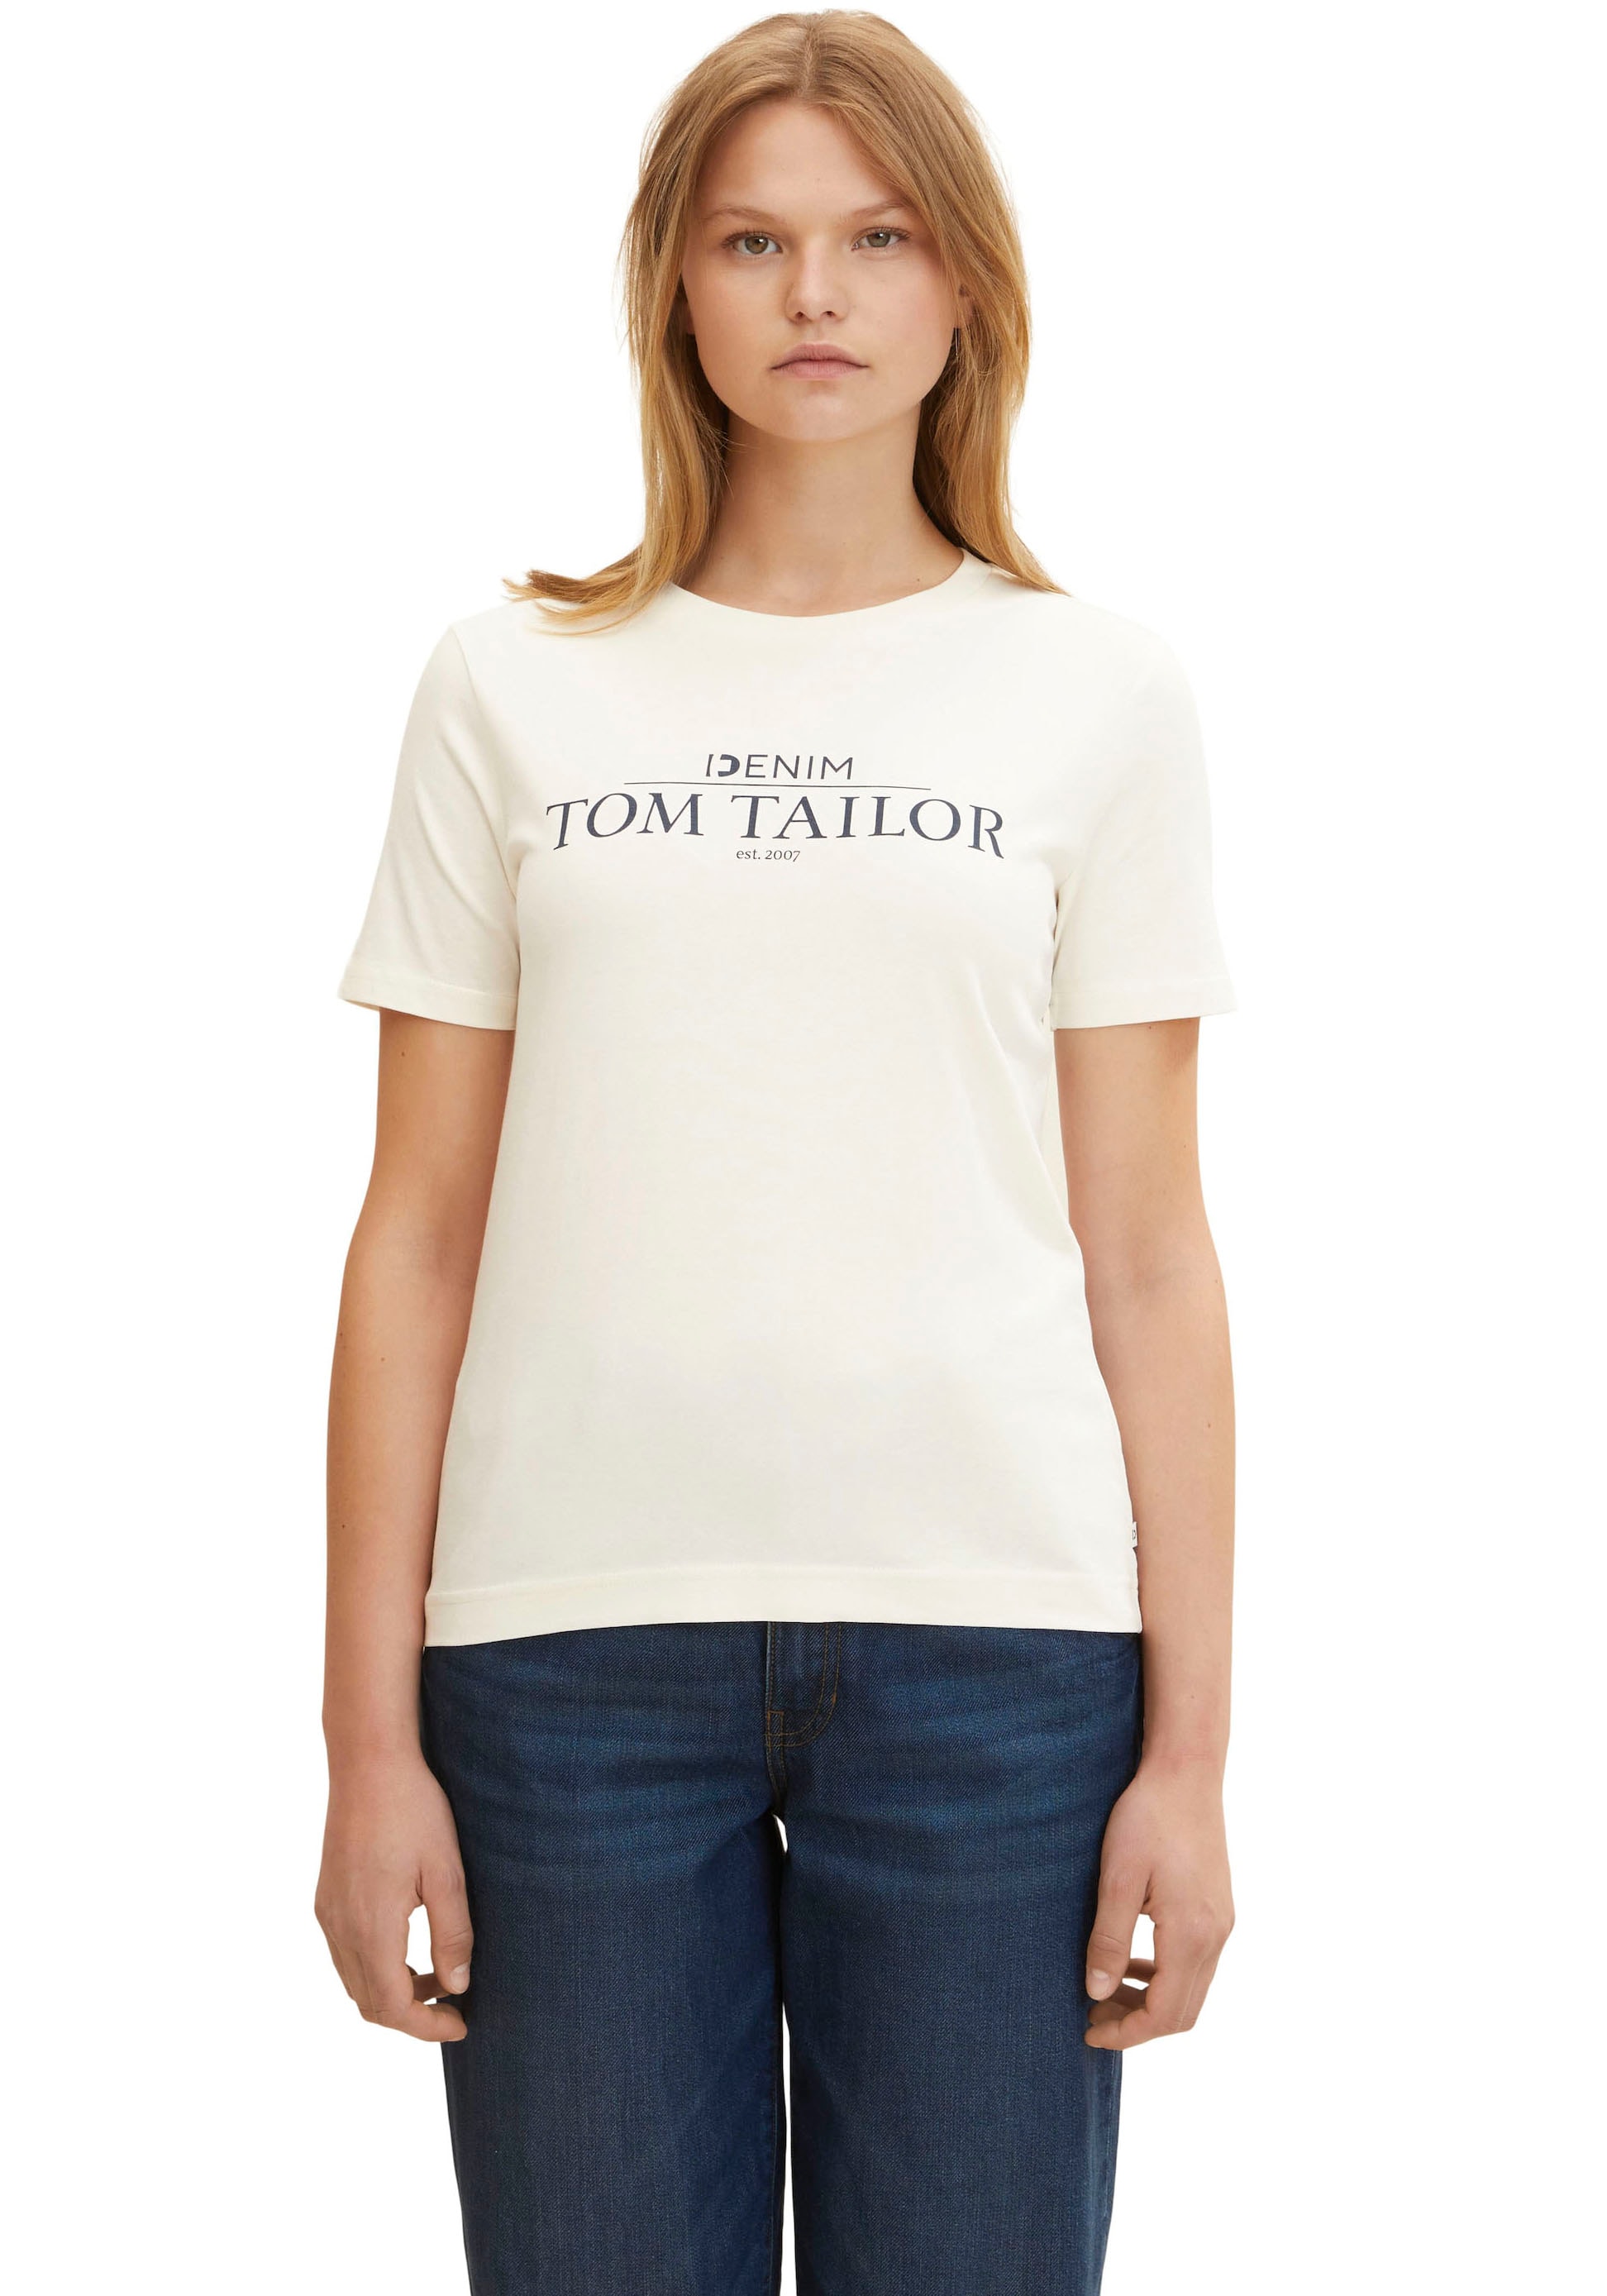 TOM TAILOR Denim T-Shirt, auf ♕ Print Brust bei der Logo mit